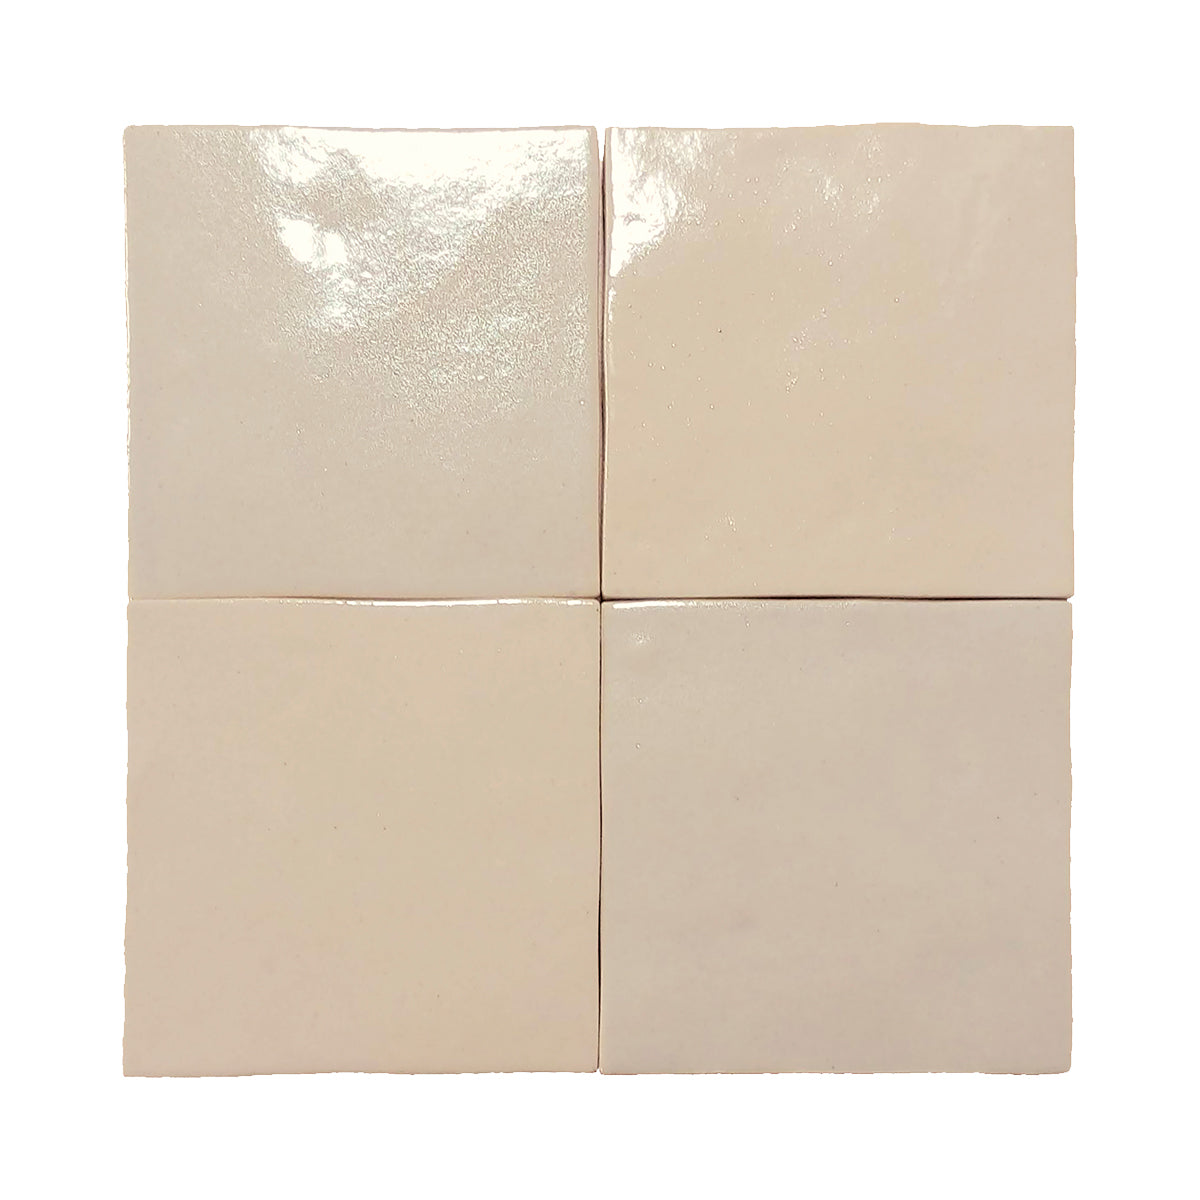 Marrakesh Tantan Beige Ceramic Tile - Semi Gloss